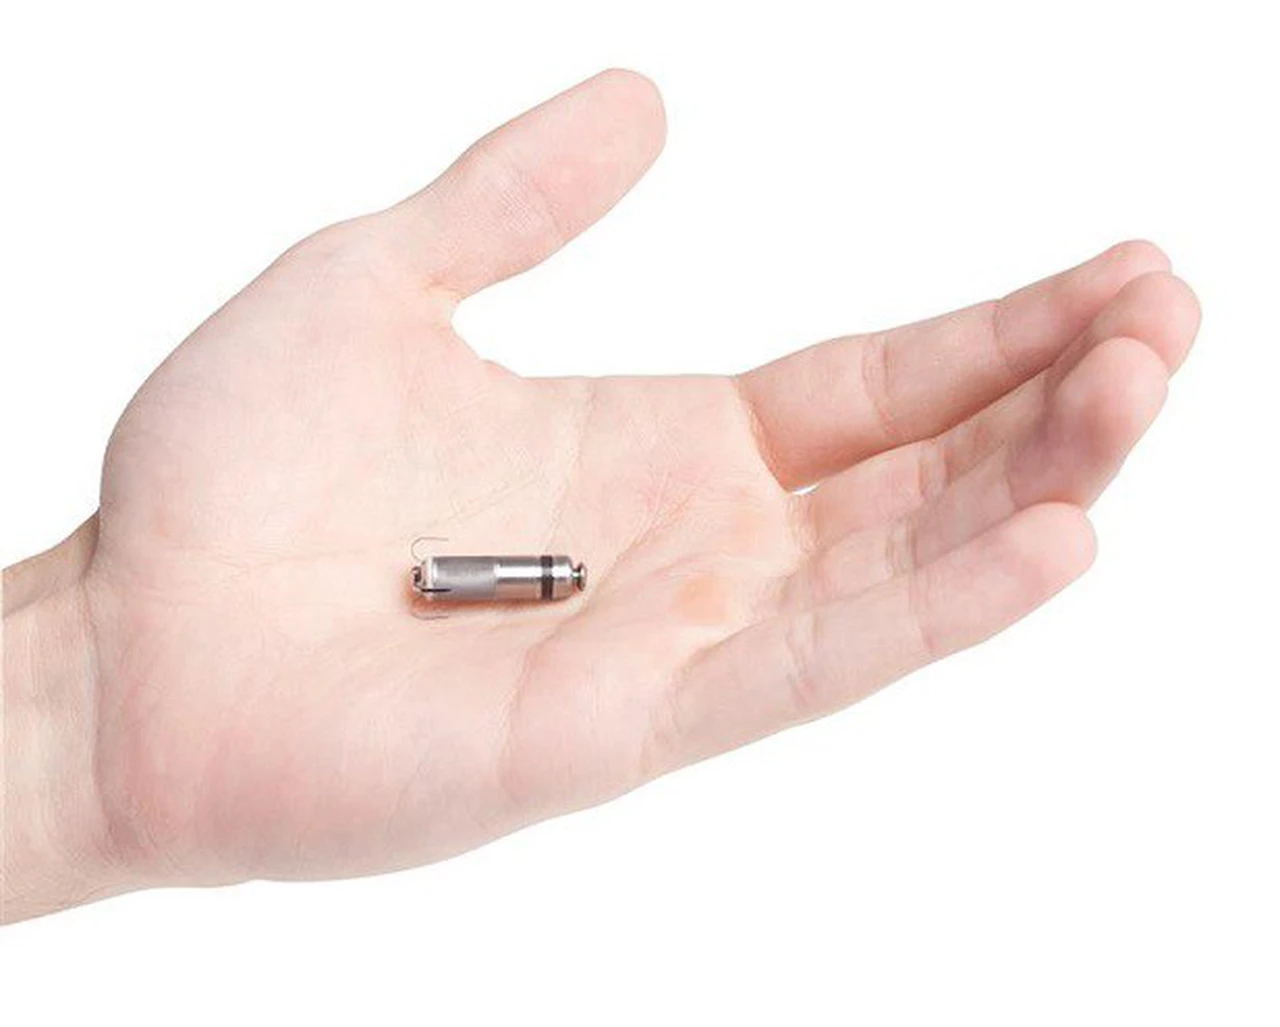 Inédito: se implantó el primer marcapasos del tamaño de una píldora en Argentina